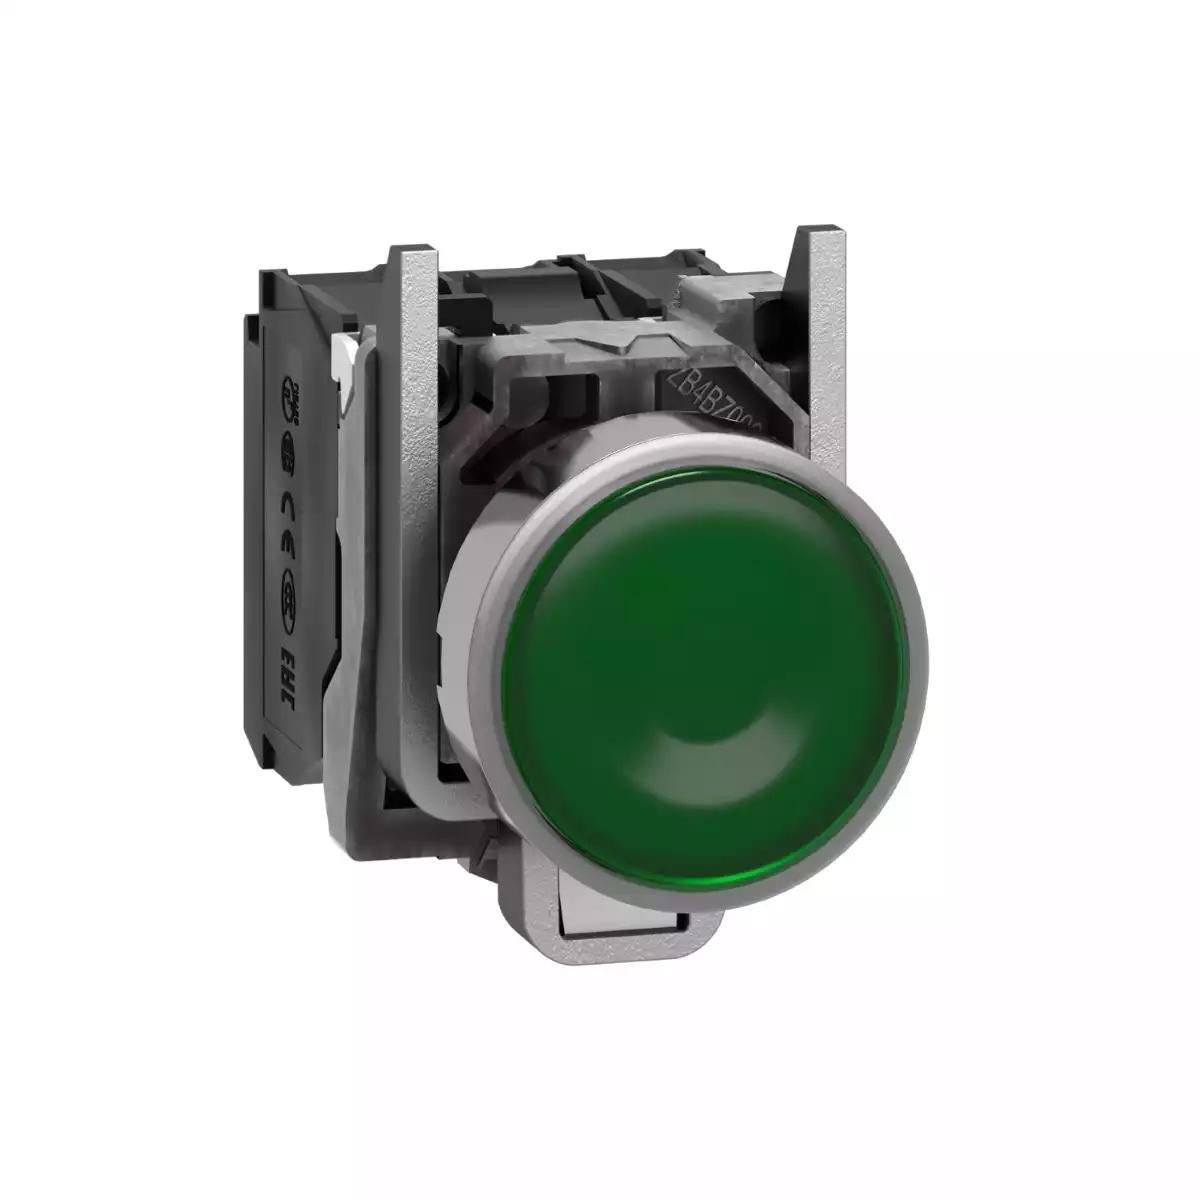 Illuminated push button, Harmony XB4, metal, green flush, 22mm, universal LED, plain lens, 1NO + 1NC, 230...240V AC